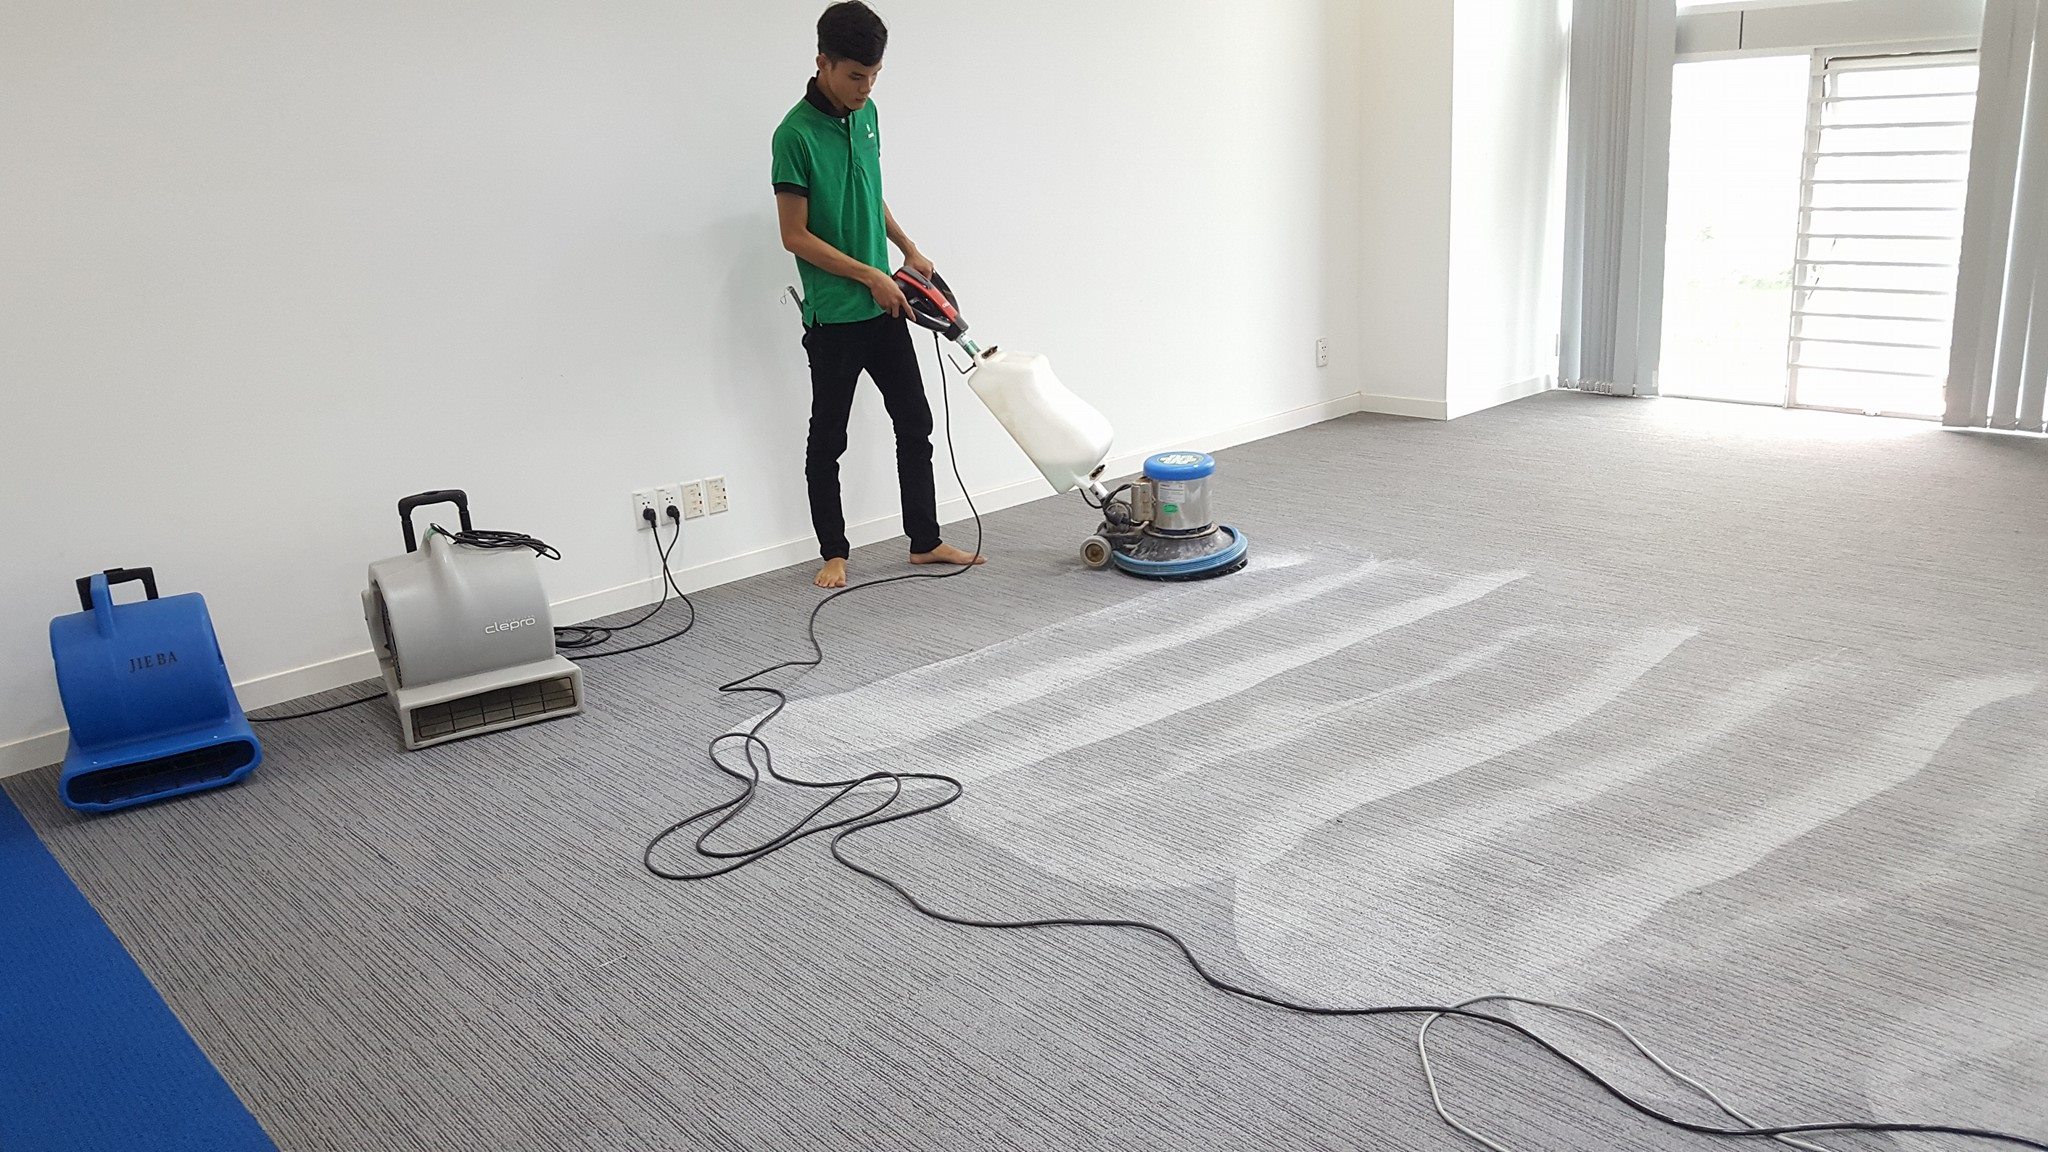 Mẹo giặt thảm chuyên nghiệp cho văn phòng - Vệ Sinh Công Nghiệp Ba Sao